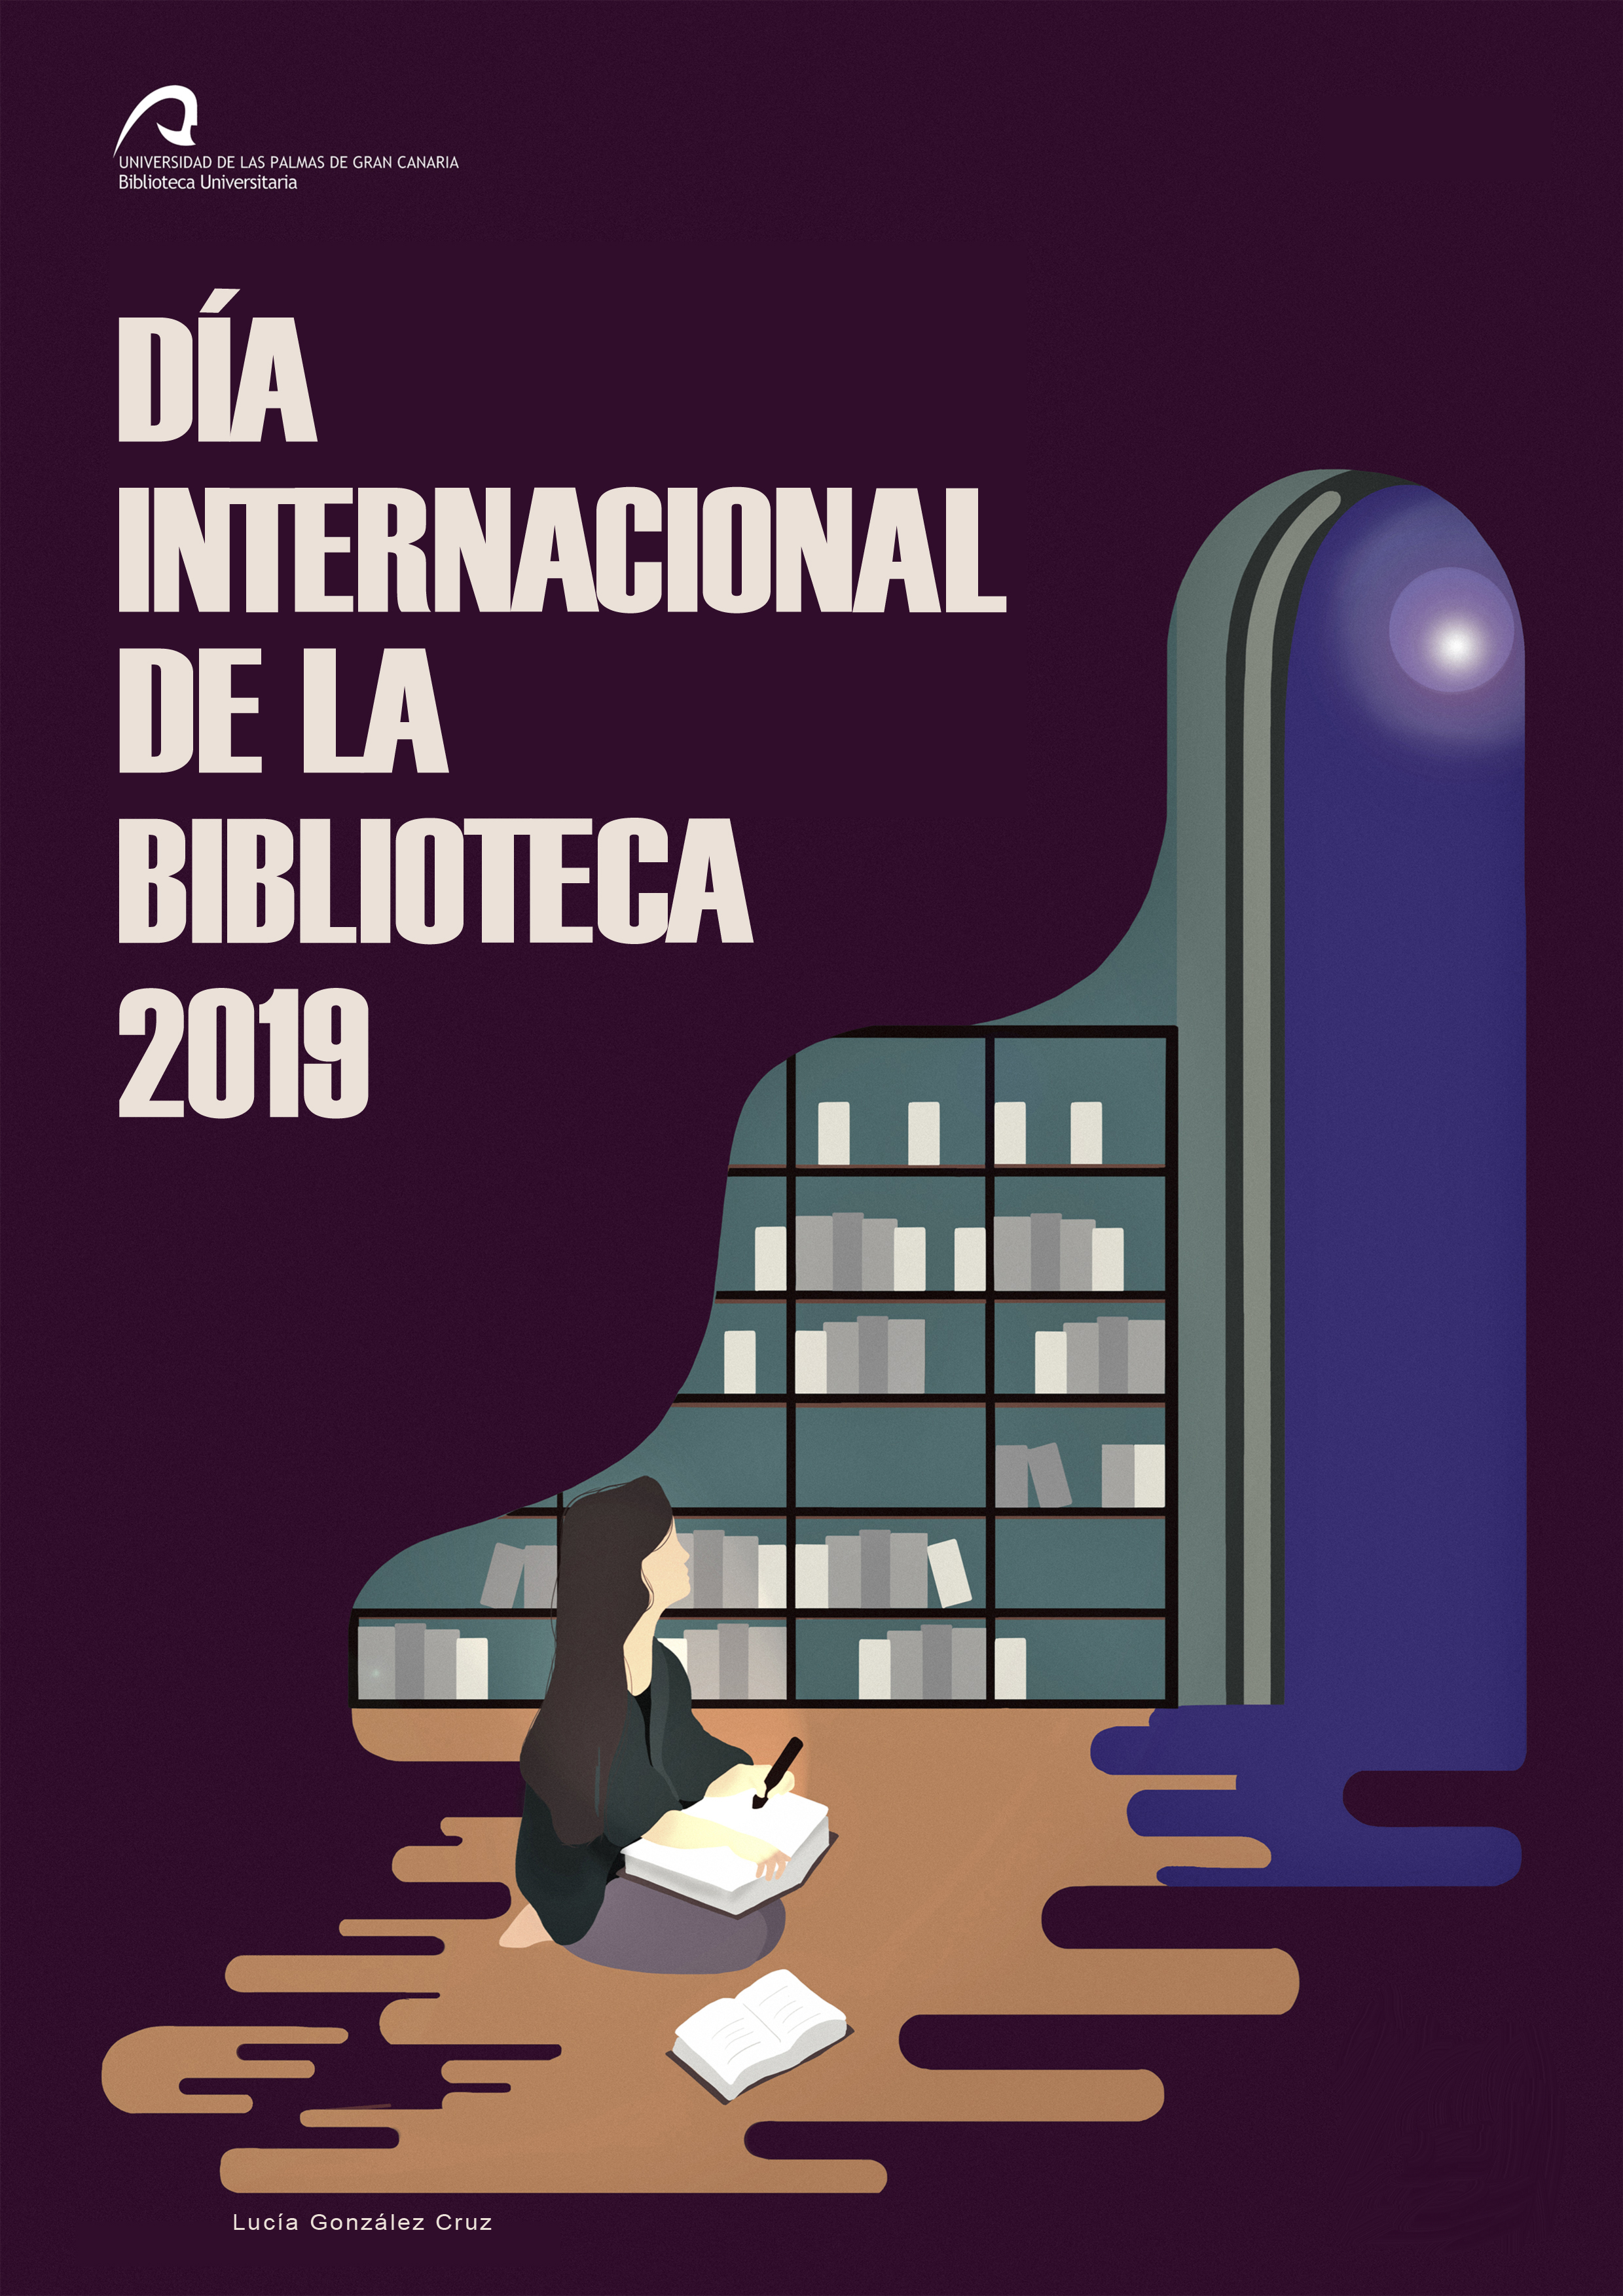 Cartel diseñado por Lucía González Cruz para la Biblioteca Universitaria de la ULPGC